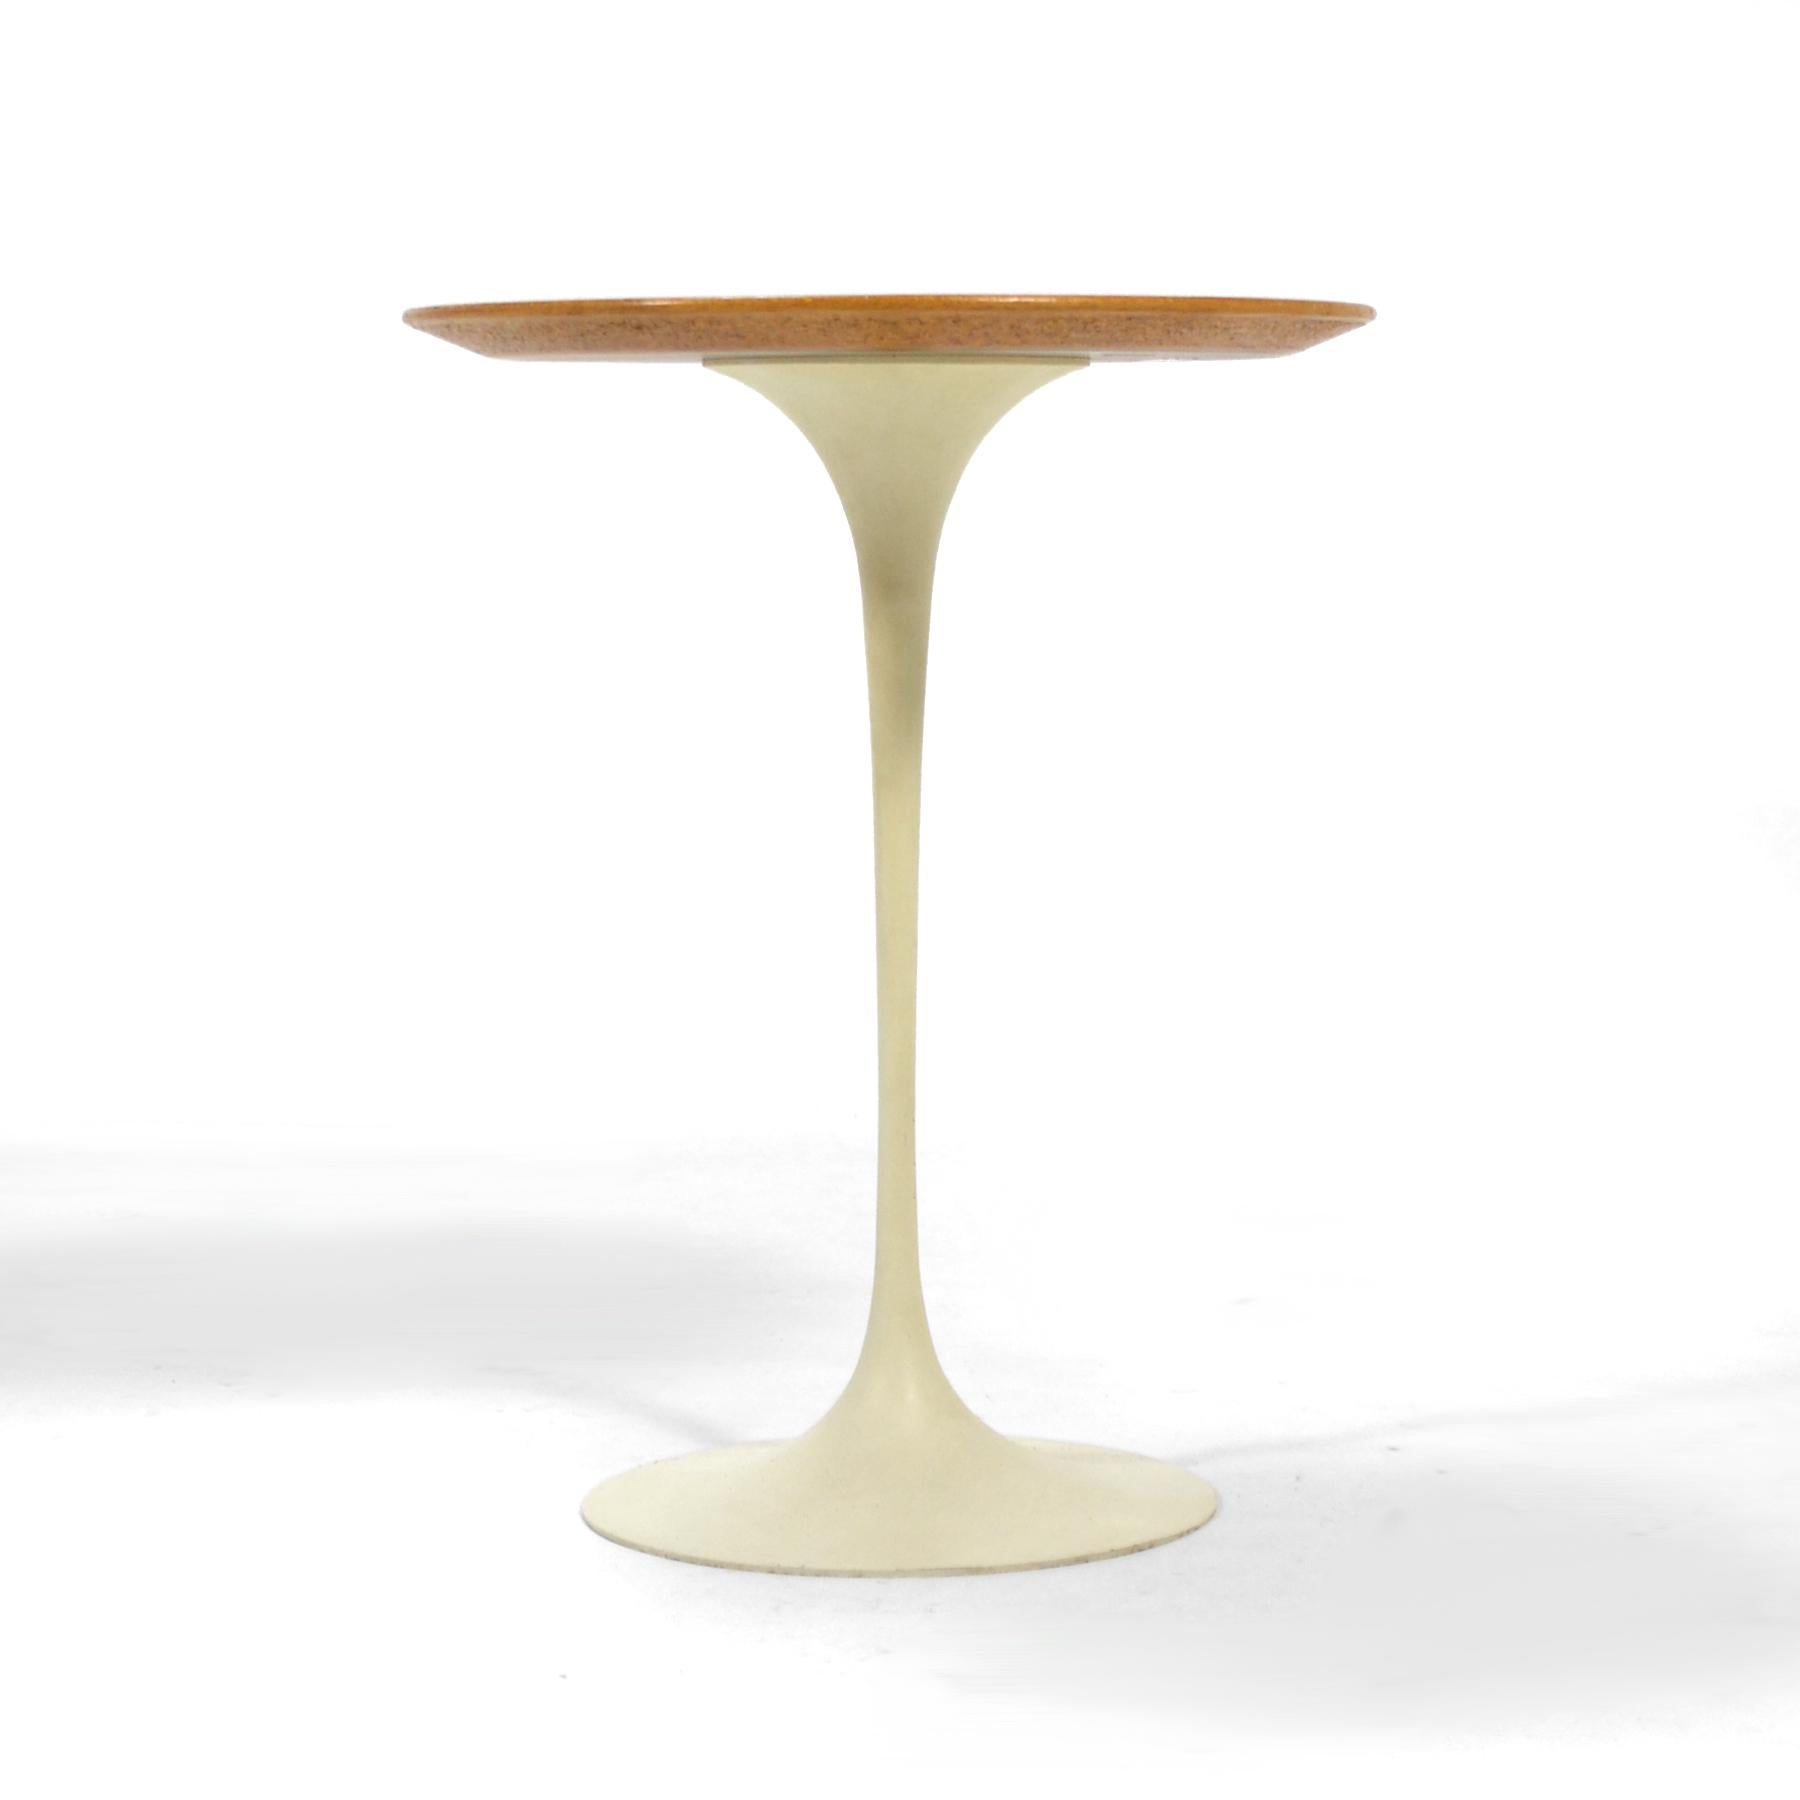 Aluminum Eero Saarinen Tulip Side Table with Oak Top